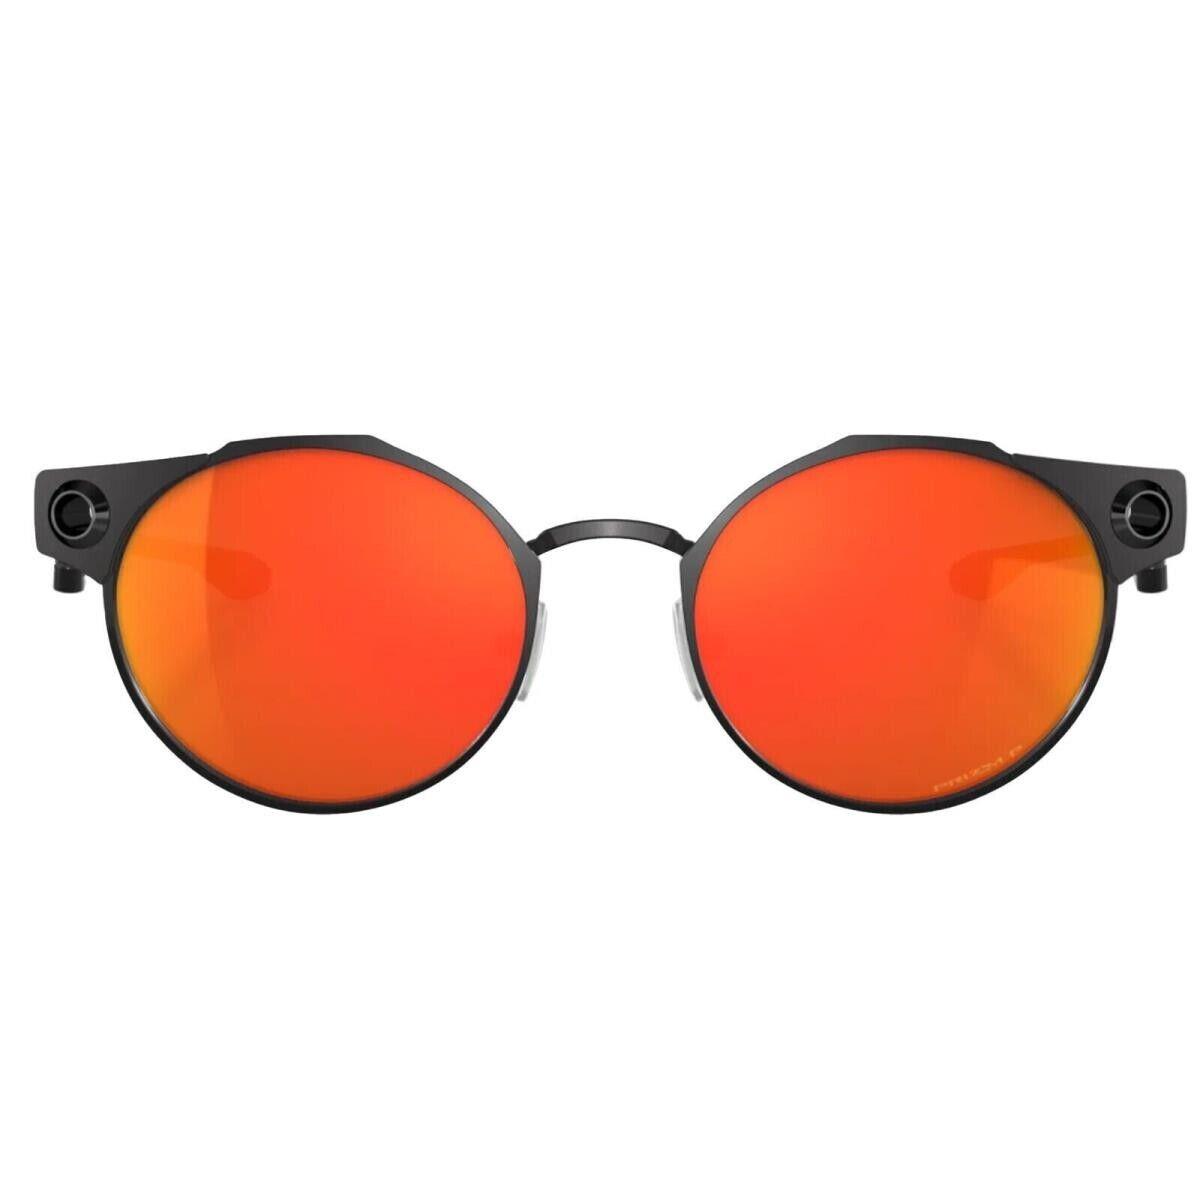 Oakley sunglasses Deadbolt - Black Frame, Orange Lens 1